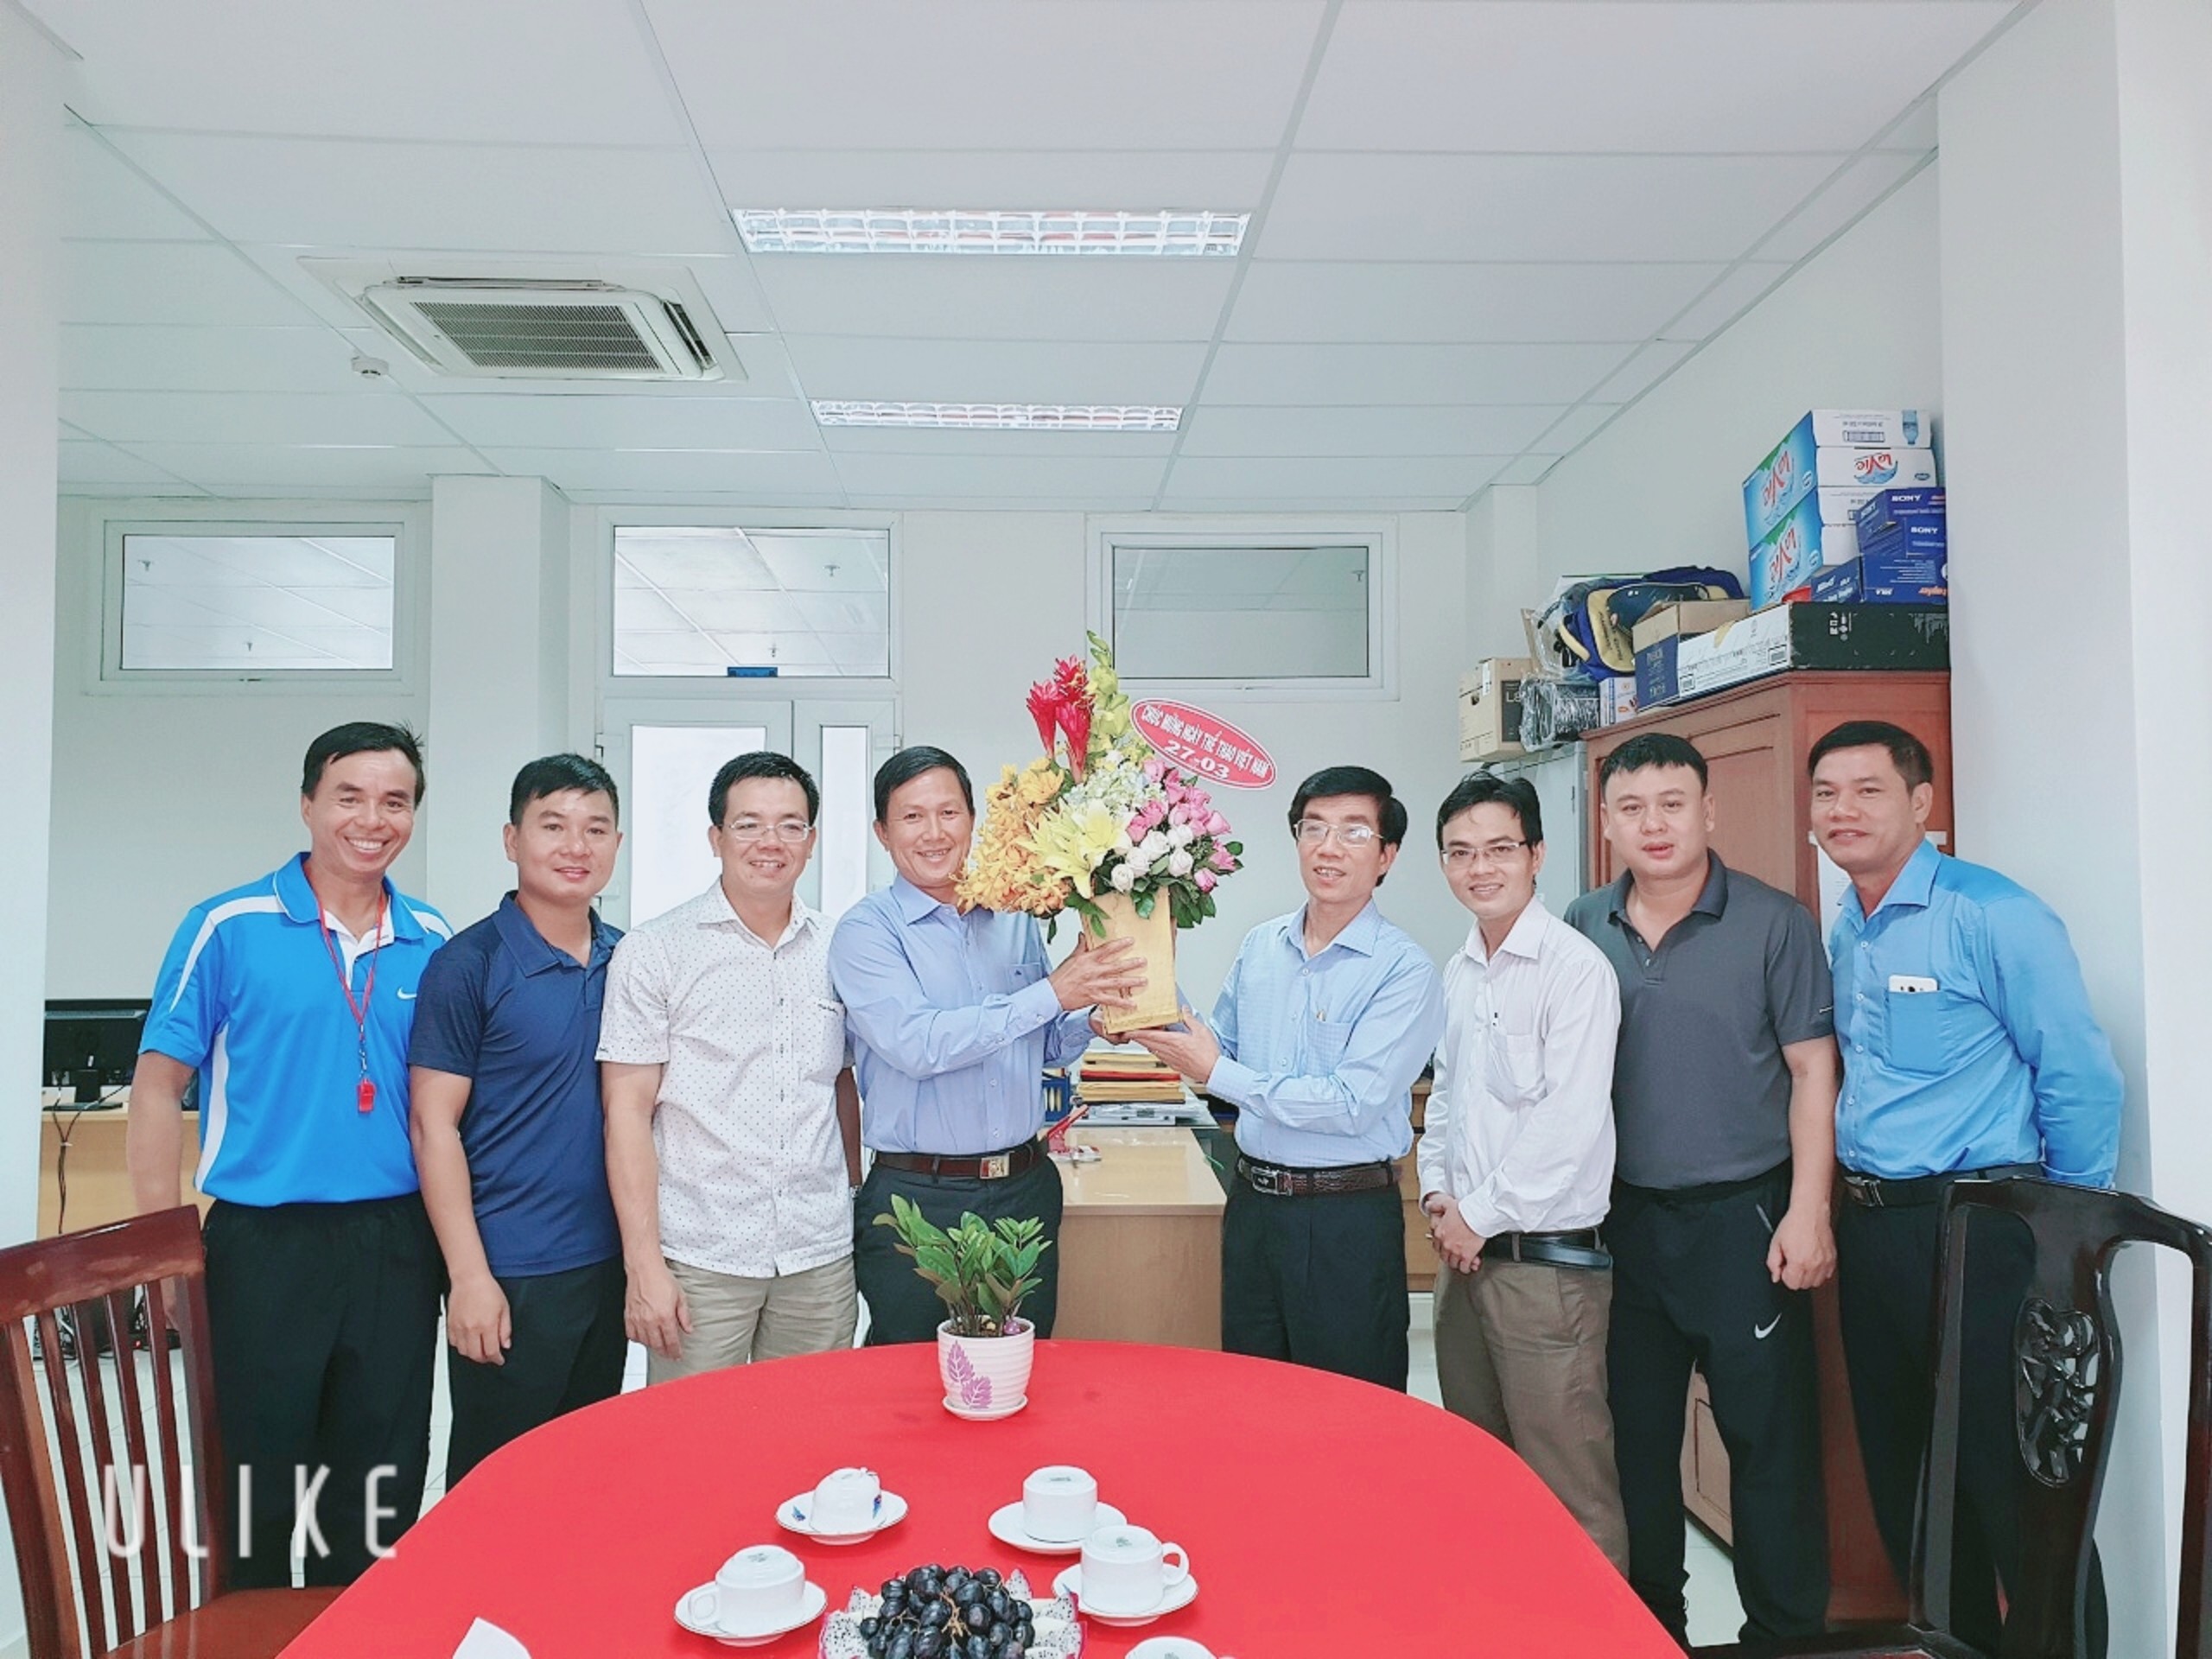 Sáng 27/3/2019, Trường Đại học Tài chính – Marketing đã tổ chức gặp mặt nhân kỷ niệm 73 năm ngày Thể thao Việt Nam (27/3/1946 - 27/3/2019).